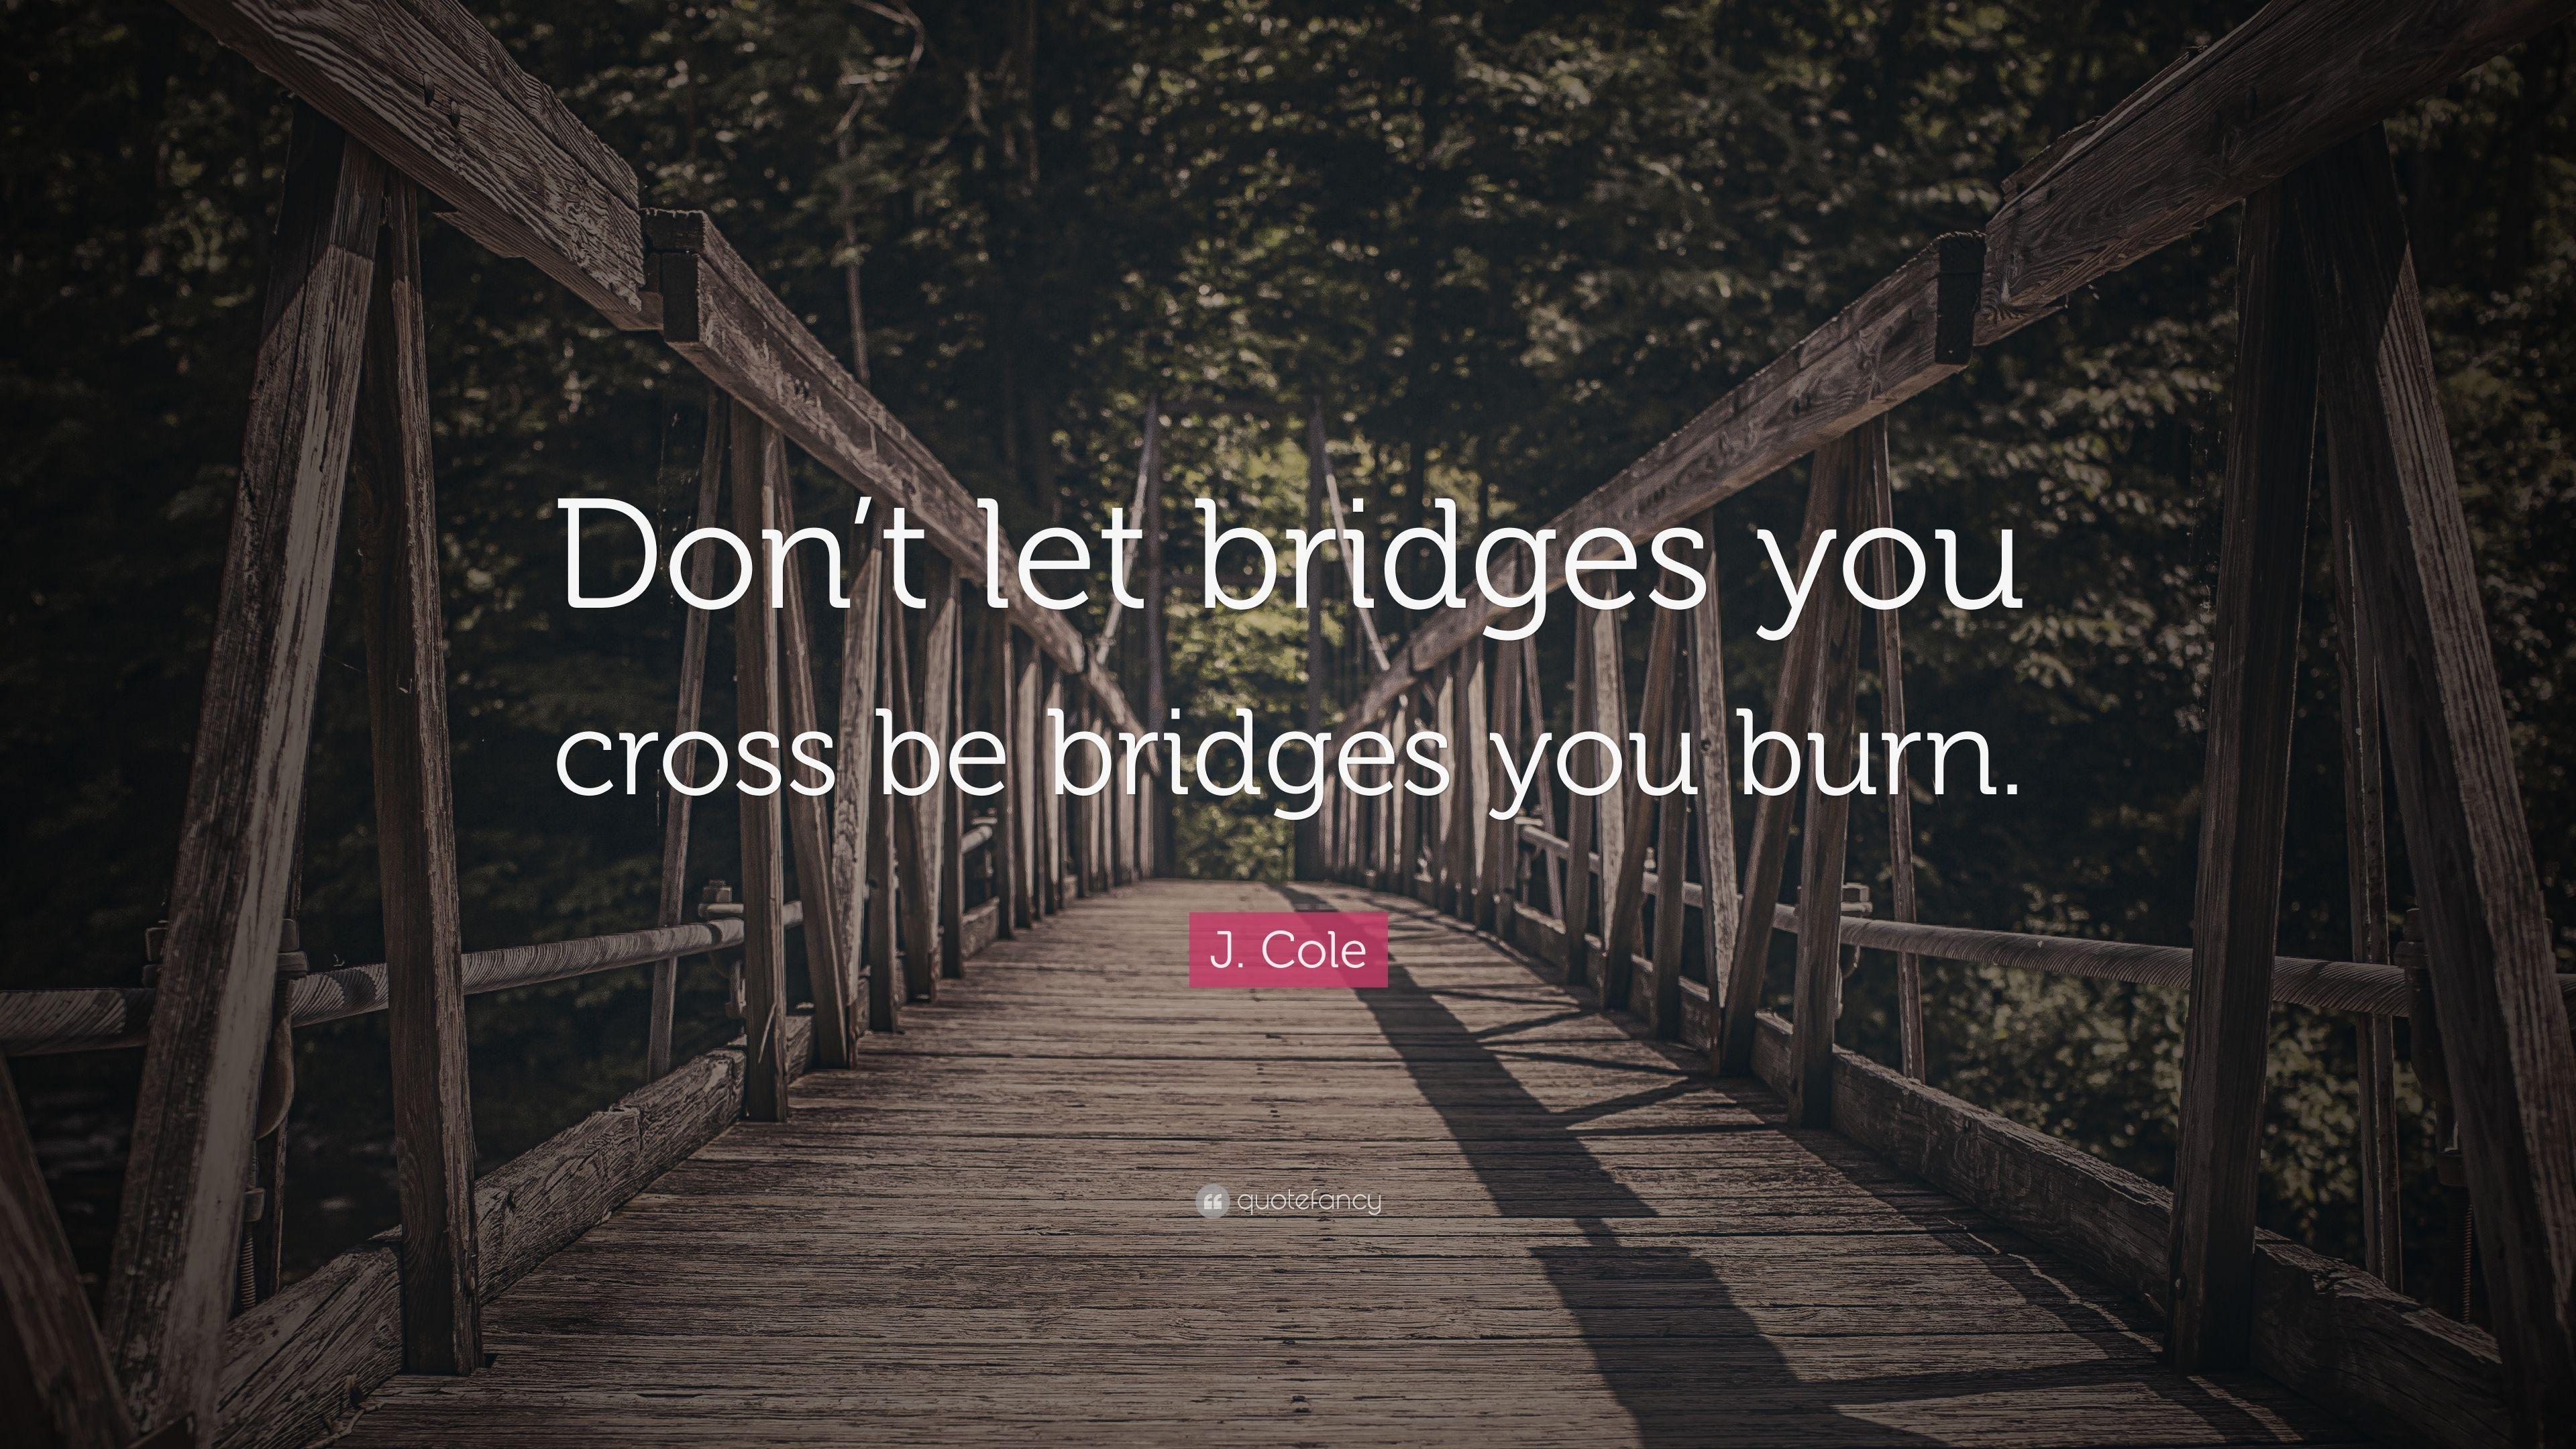 J. Cole Quote: “Don&;t let bridges you cross be bridges you burn